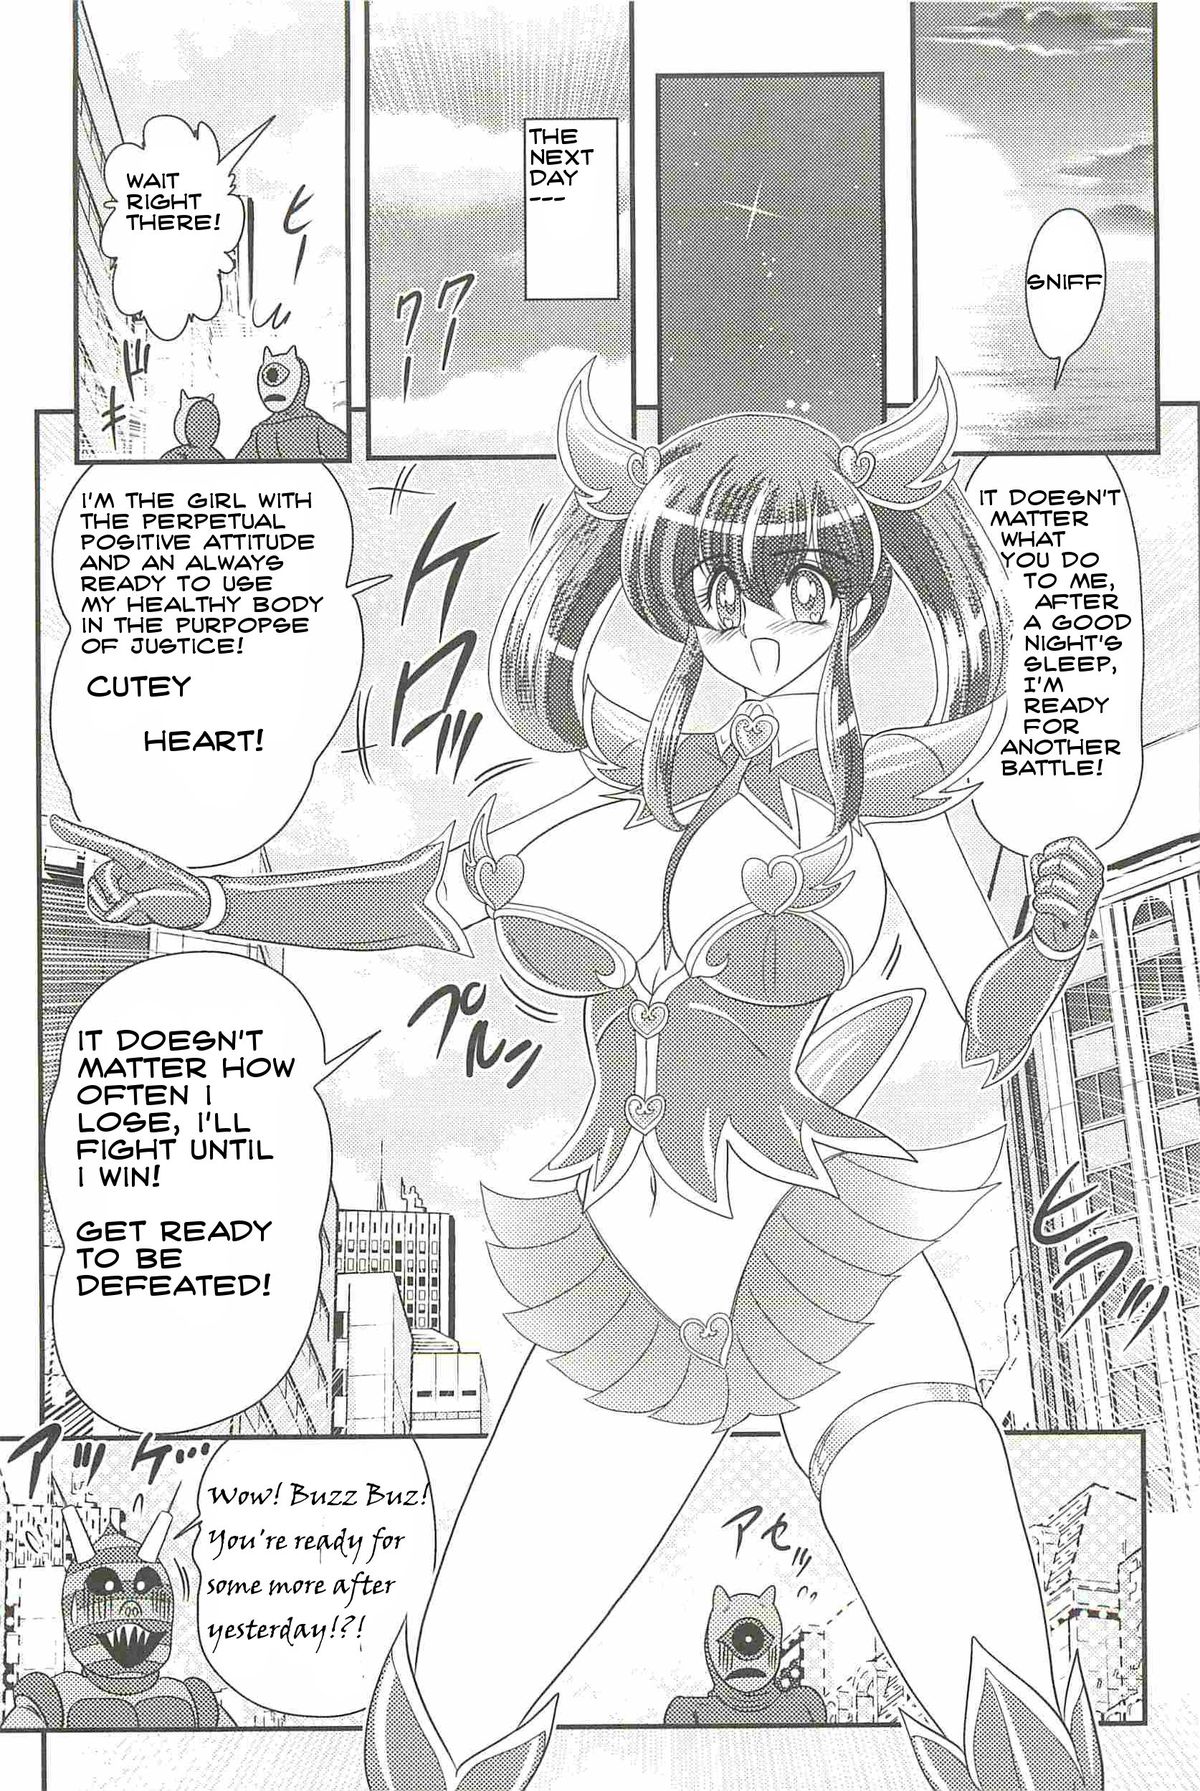 Cutey Heart - Kamitou Masaki {bewbs666} page 28 full